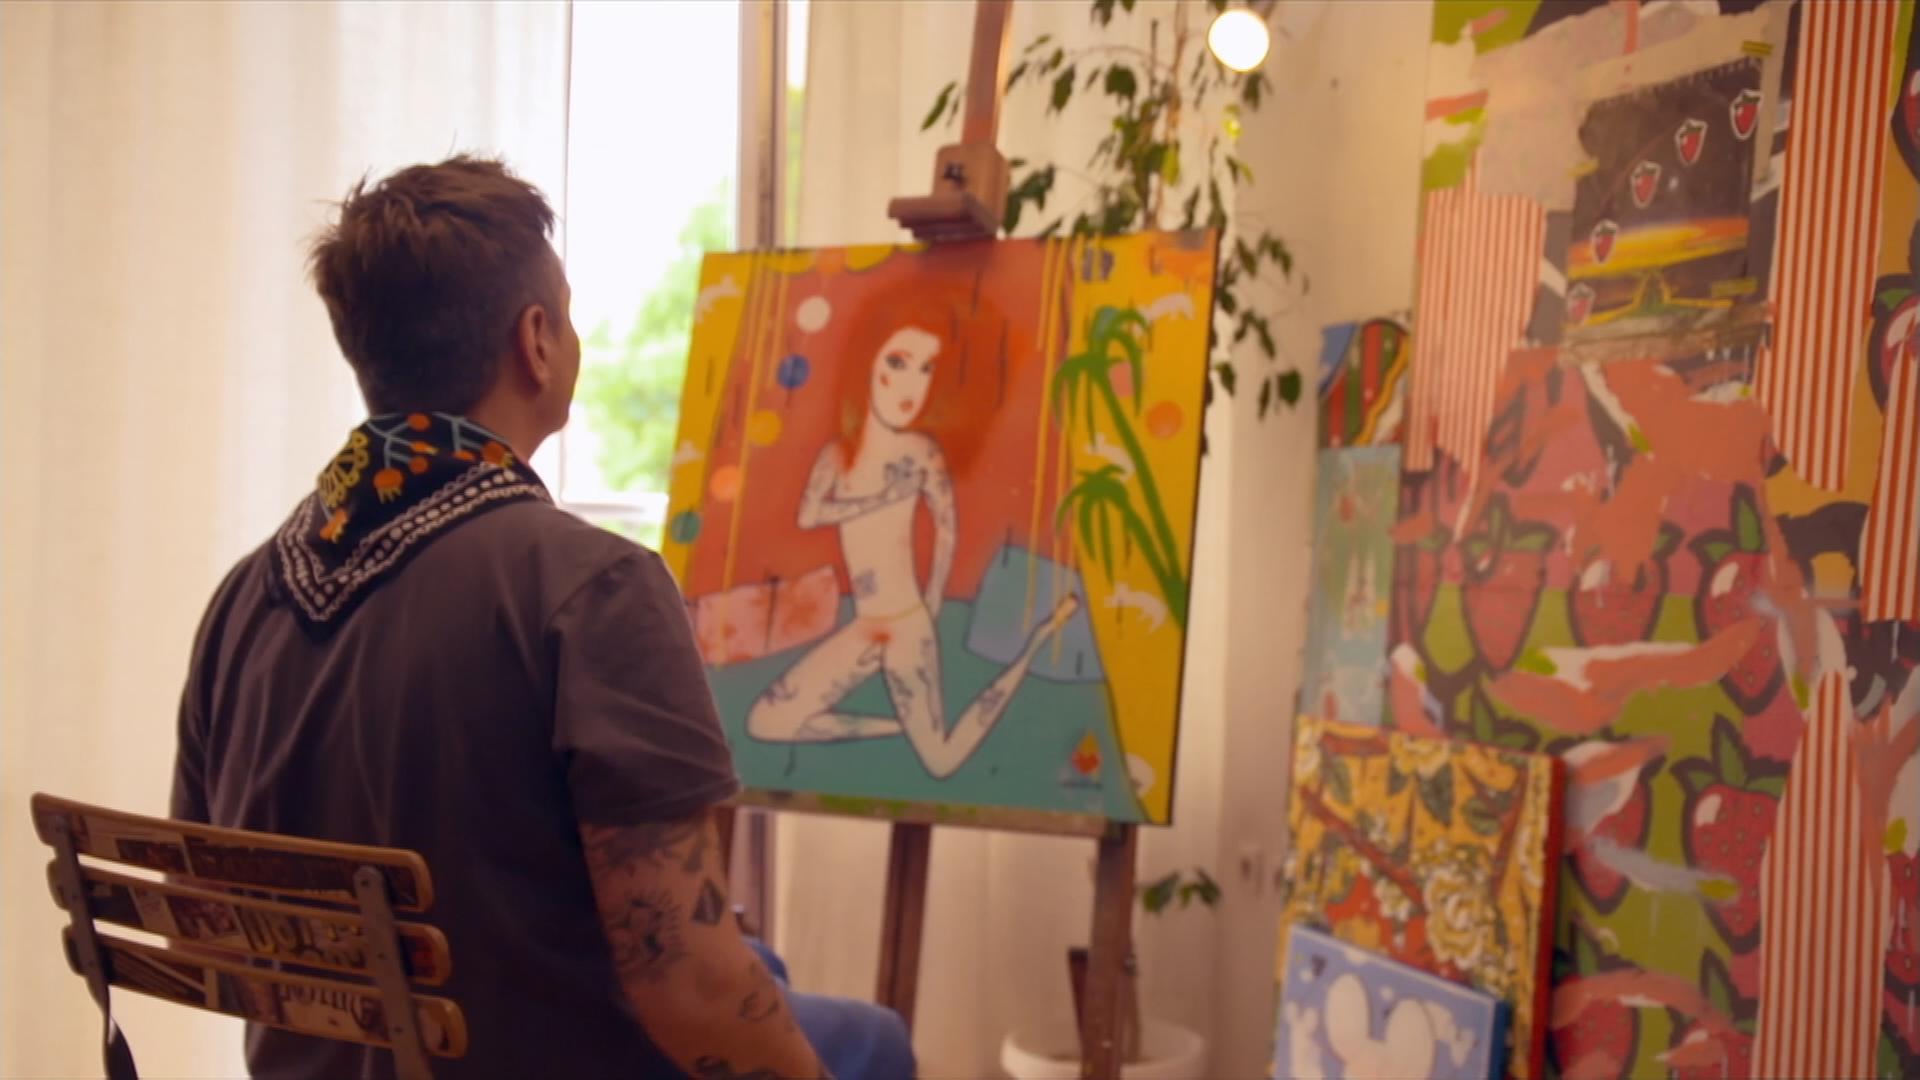 Maler und Drag Queen beim Malen vor Selbstportrait